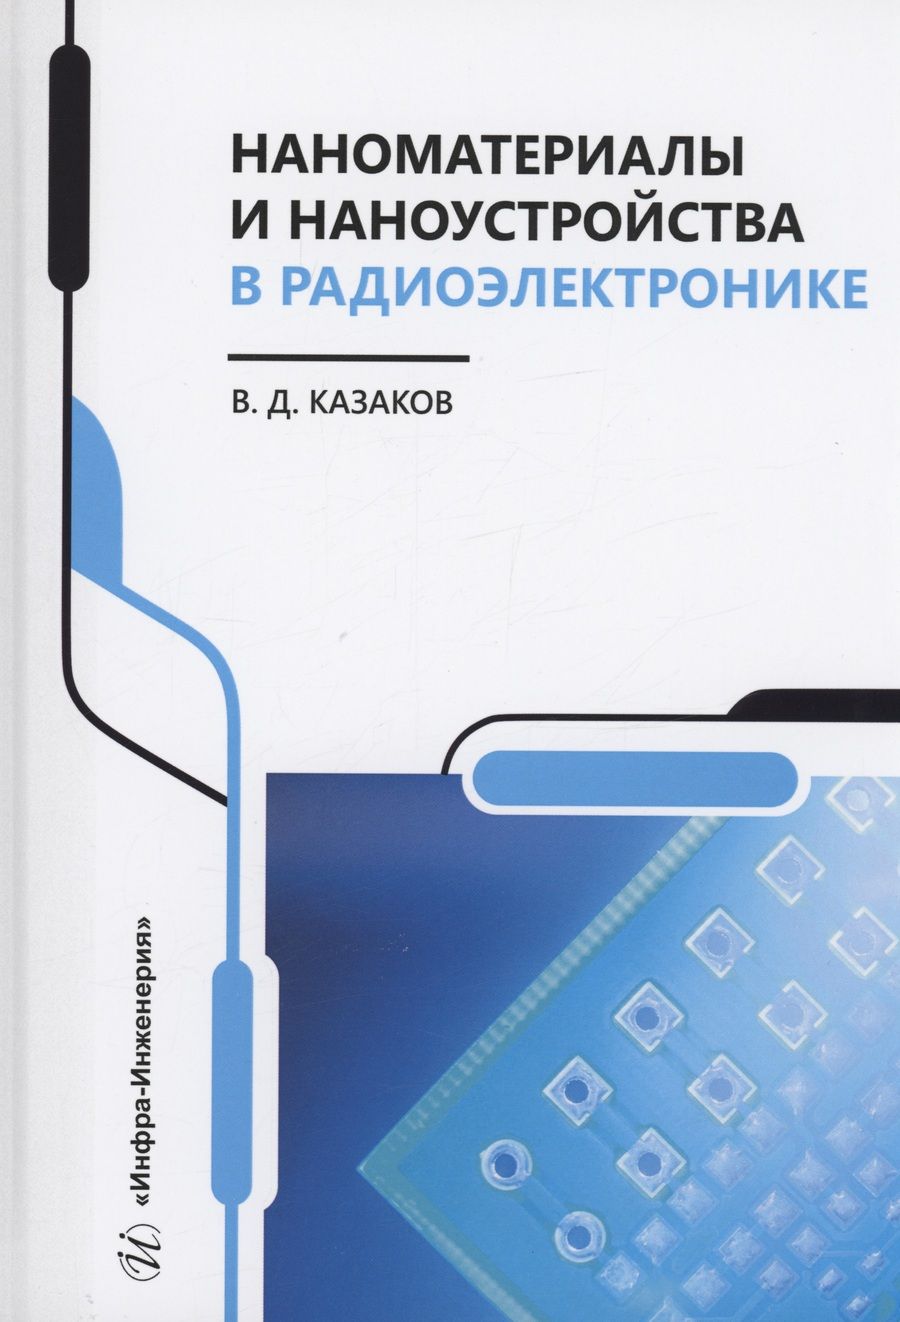 Обложка книги "Казаков: Наноматериалы и наноустройства в радиоэлектронике. Учебное пособие"